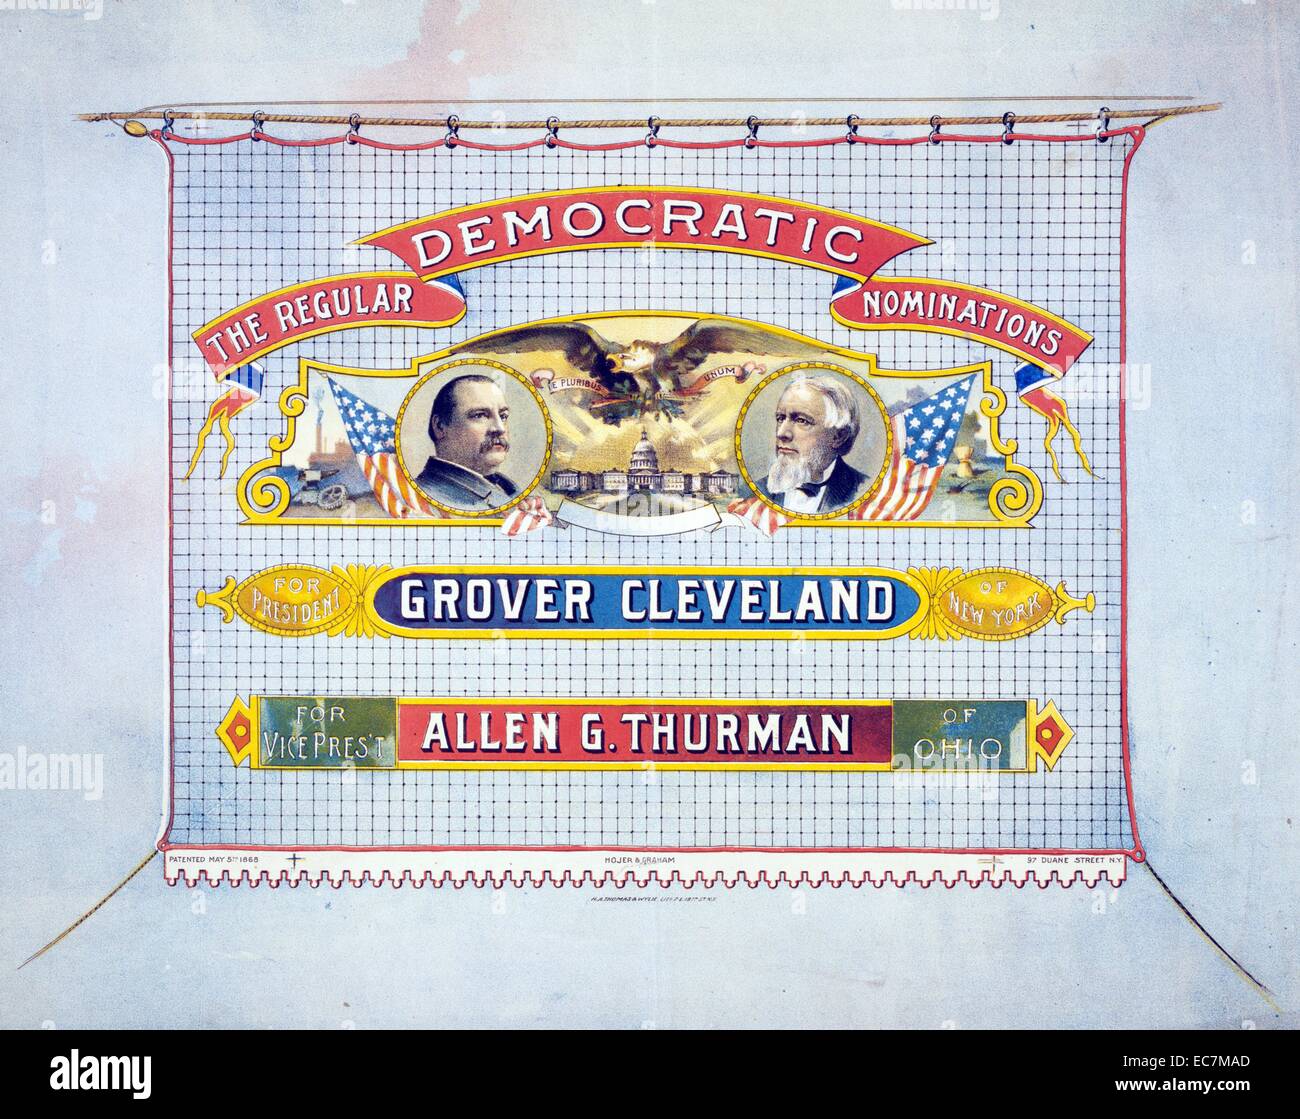 Regolare la nomination democratica: presidente Grover Cleveland di New York. Per il Vice Presidente, Allen G. Thurman dell'Ohio. Foto Stock